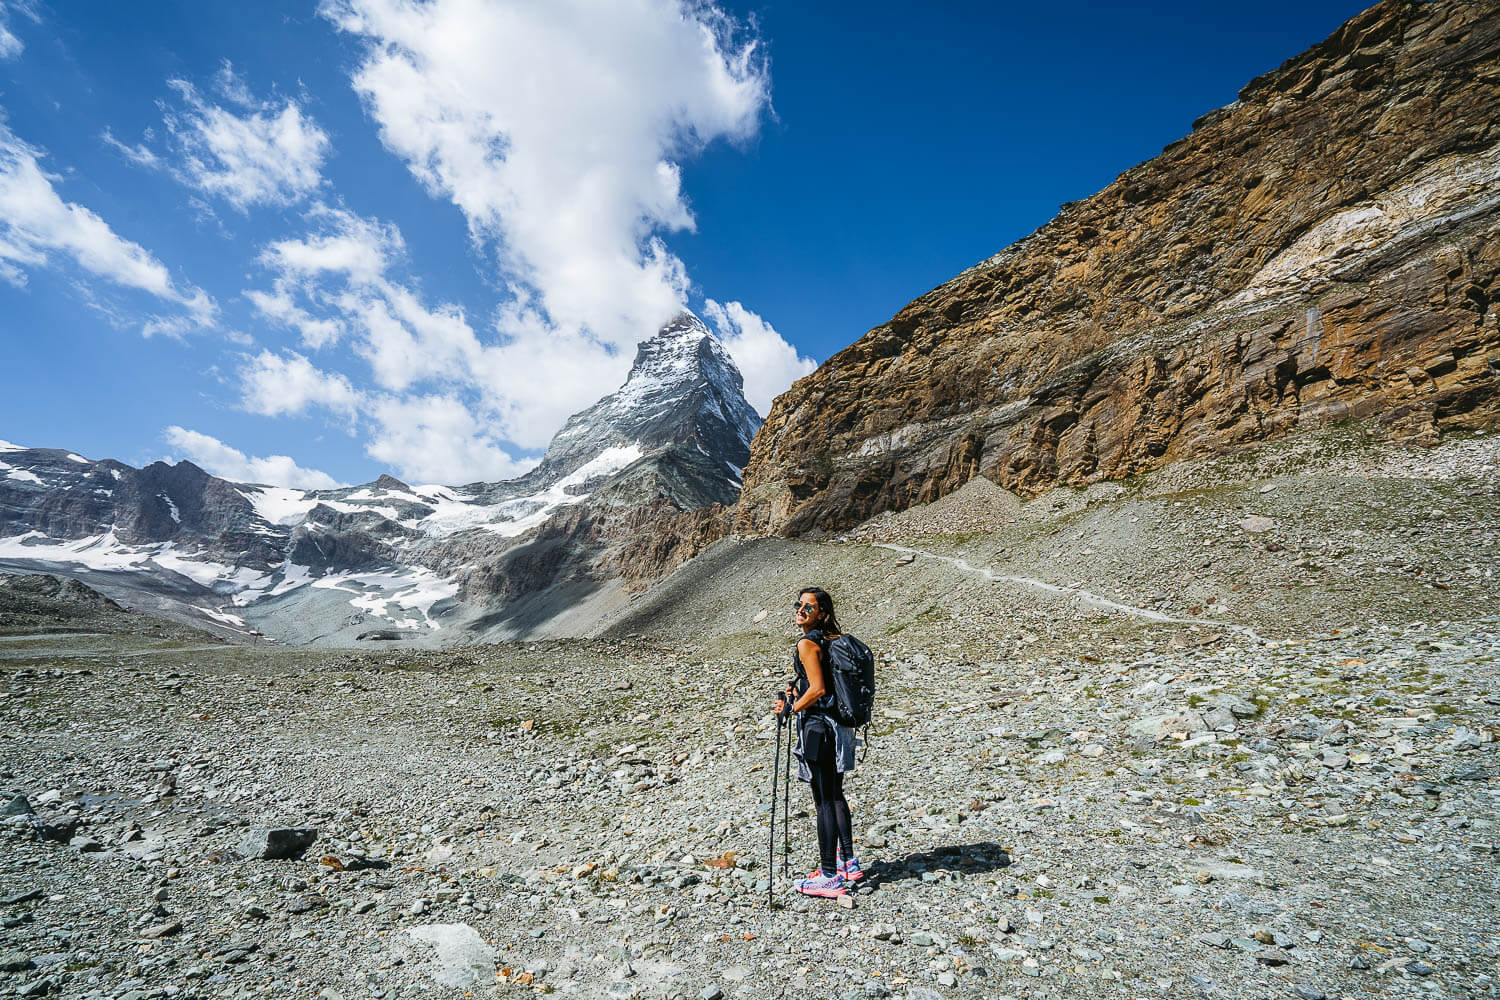 Matterhorn Glacier Trail in Zermatt